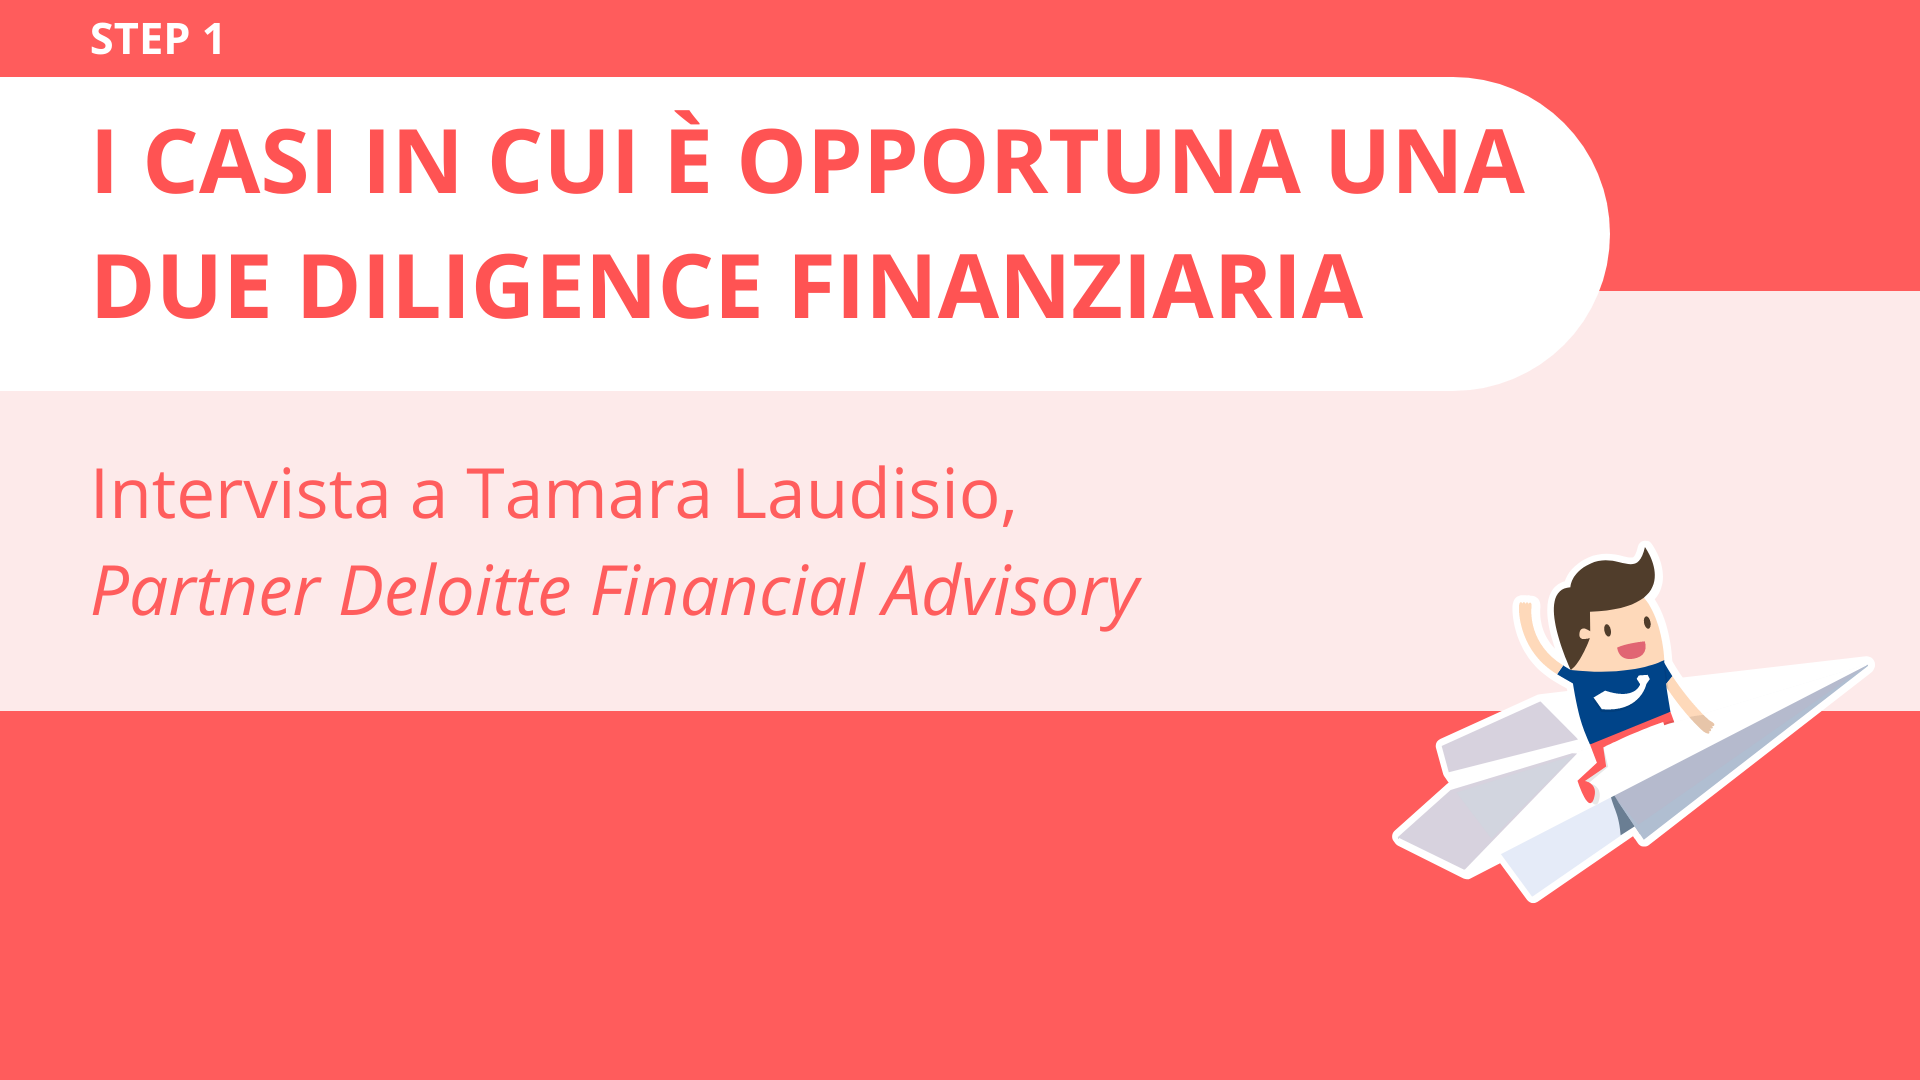 I casi in cui è opportuna una due diligence finanziaria<br>Tamara Laudisio, Partner di Deloitte Financial Advisory